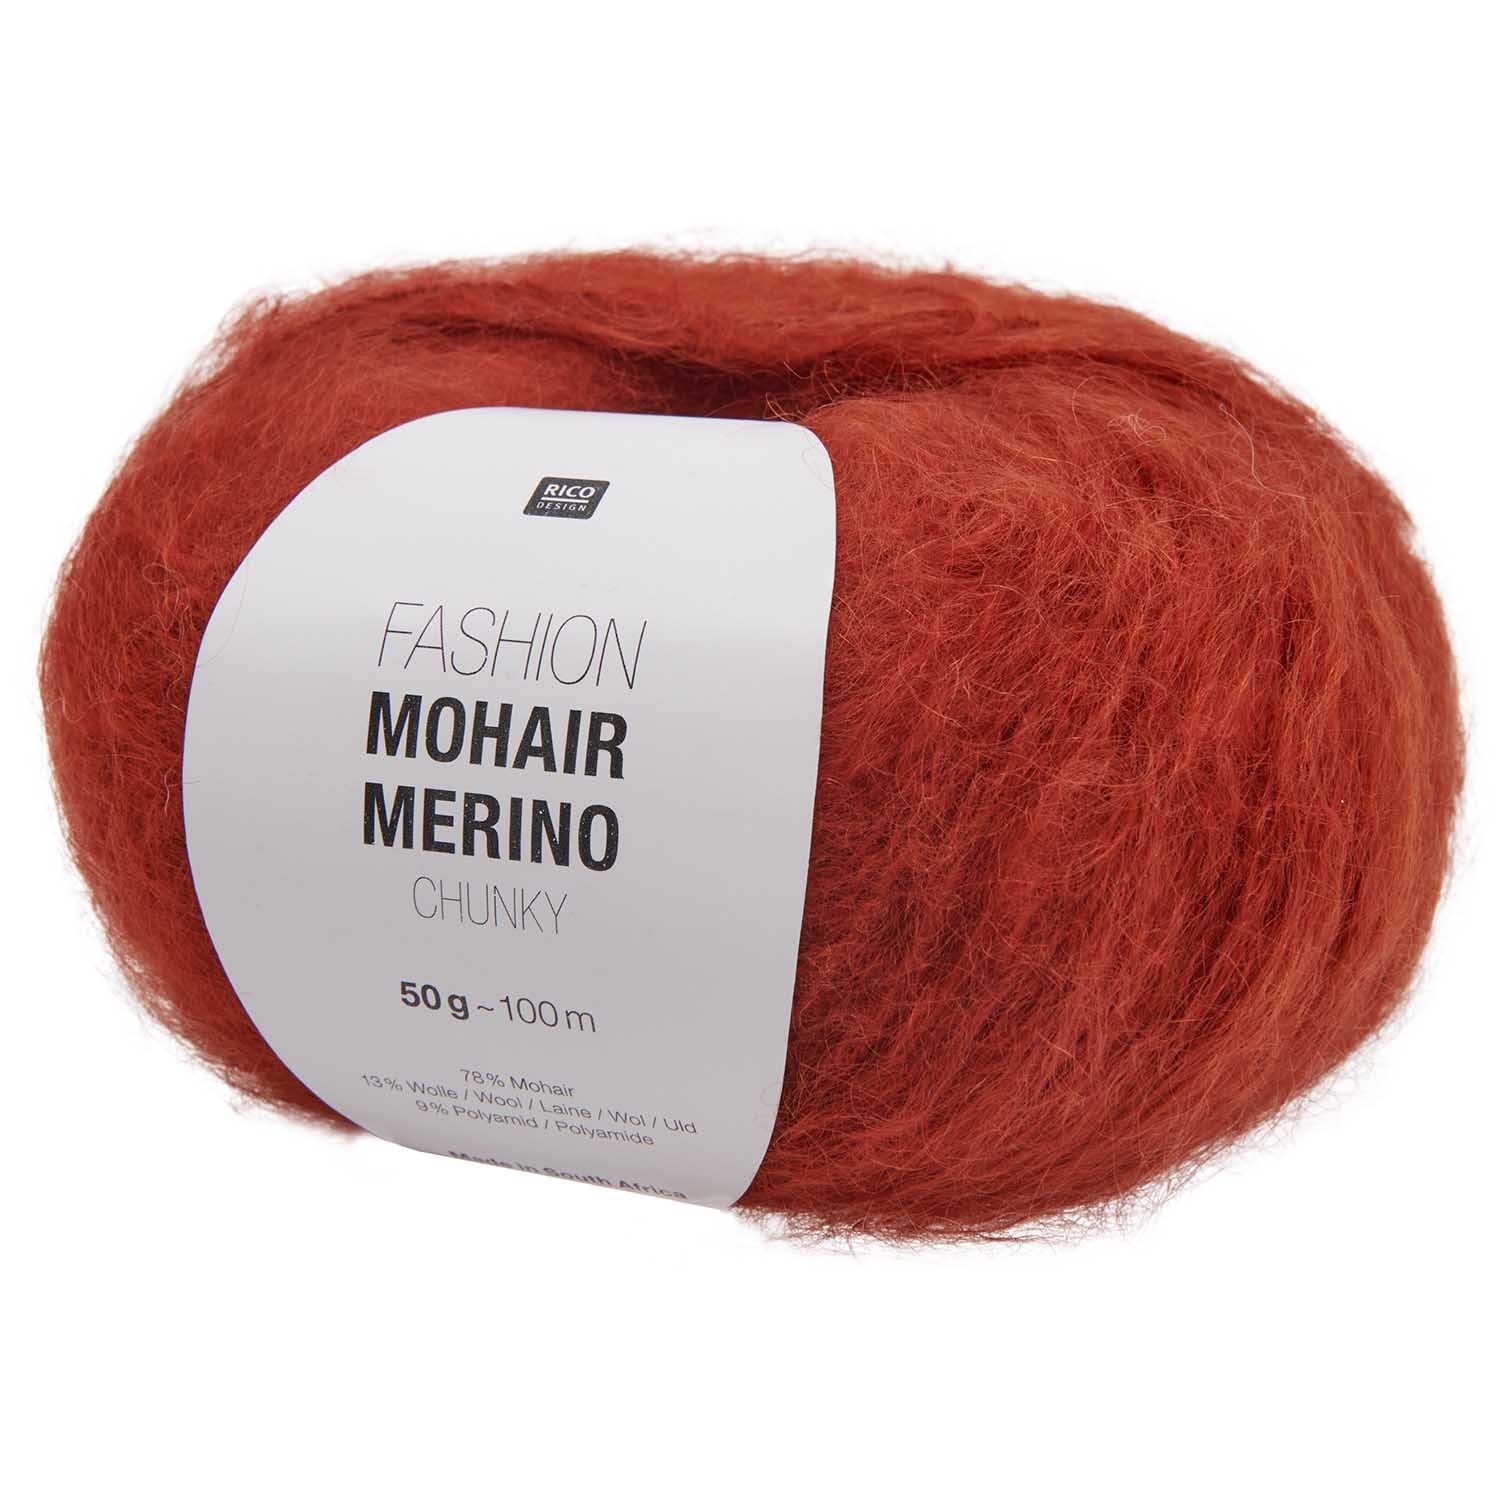 Häkelset Schal Modell 06 aus Winter Crochet Collection Mohair